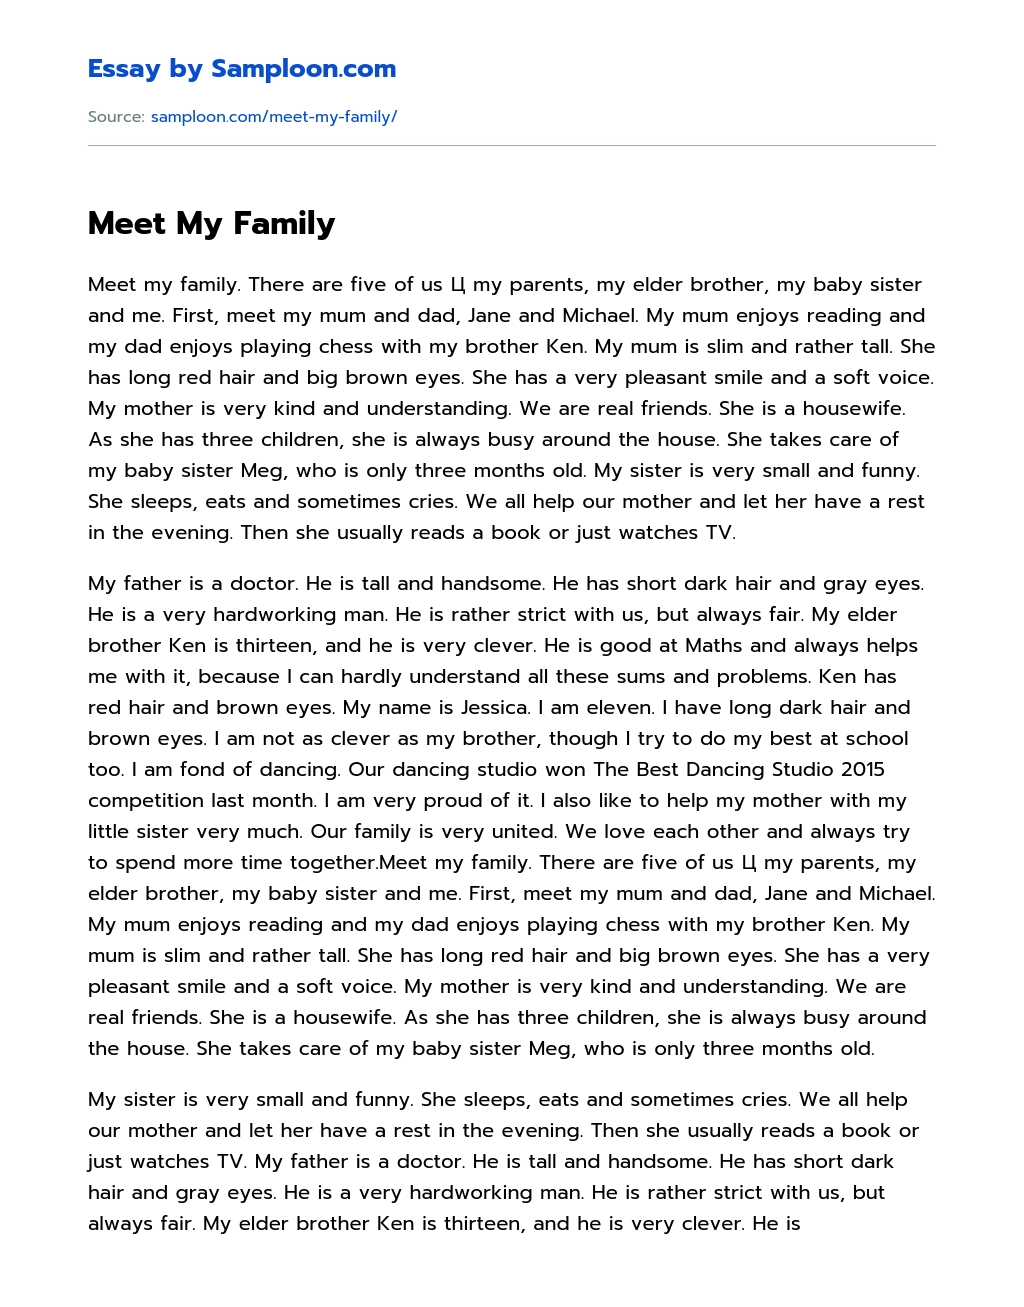 Meet My Family essay